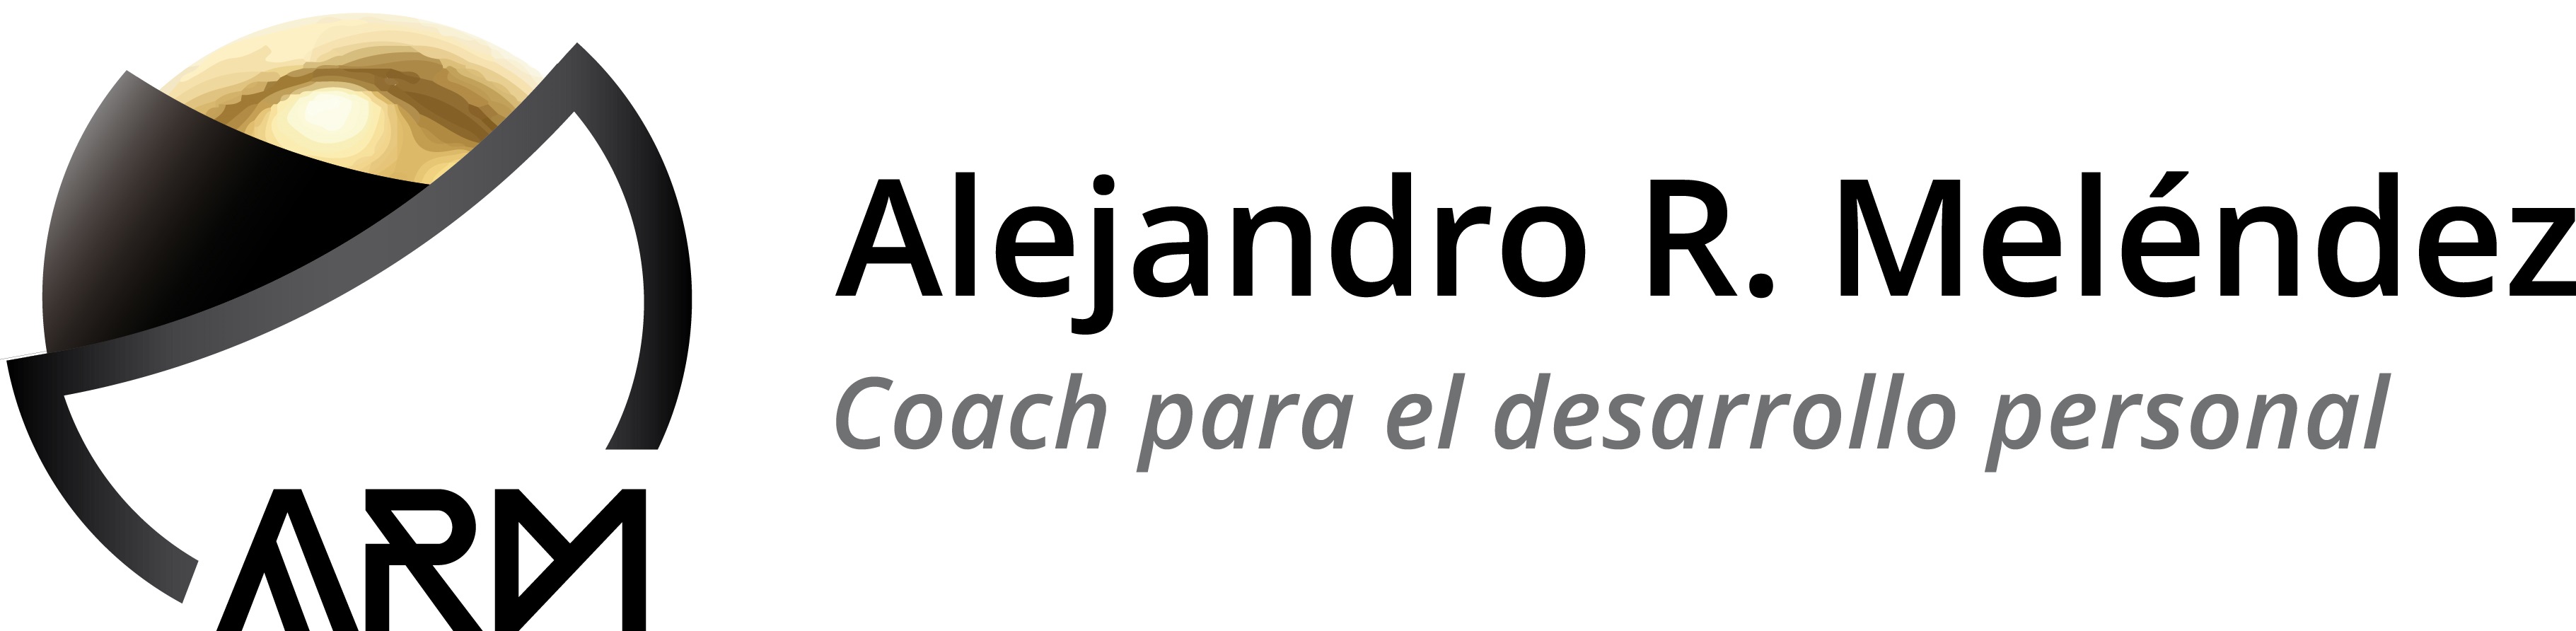 COACH Y TERAPEUTA ALEJANDRO R. MELENDEZ